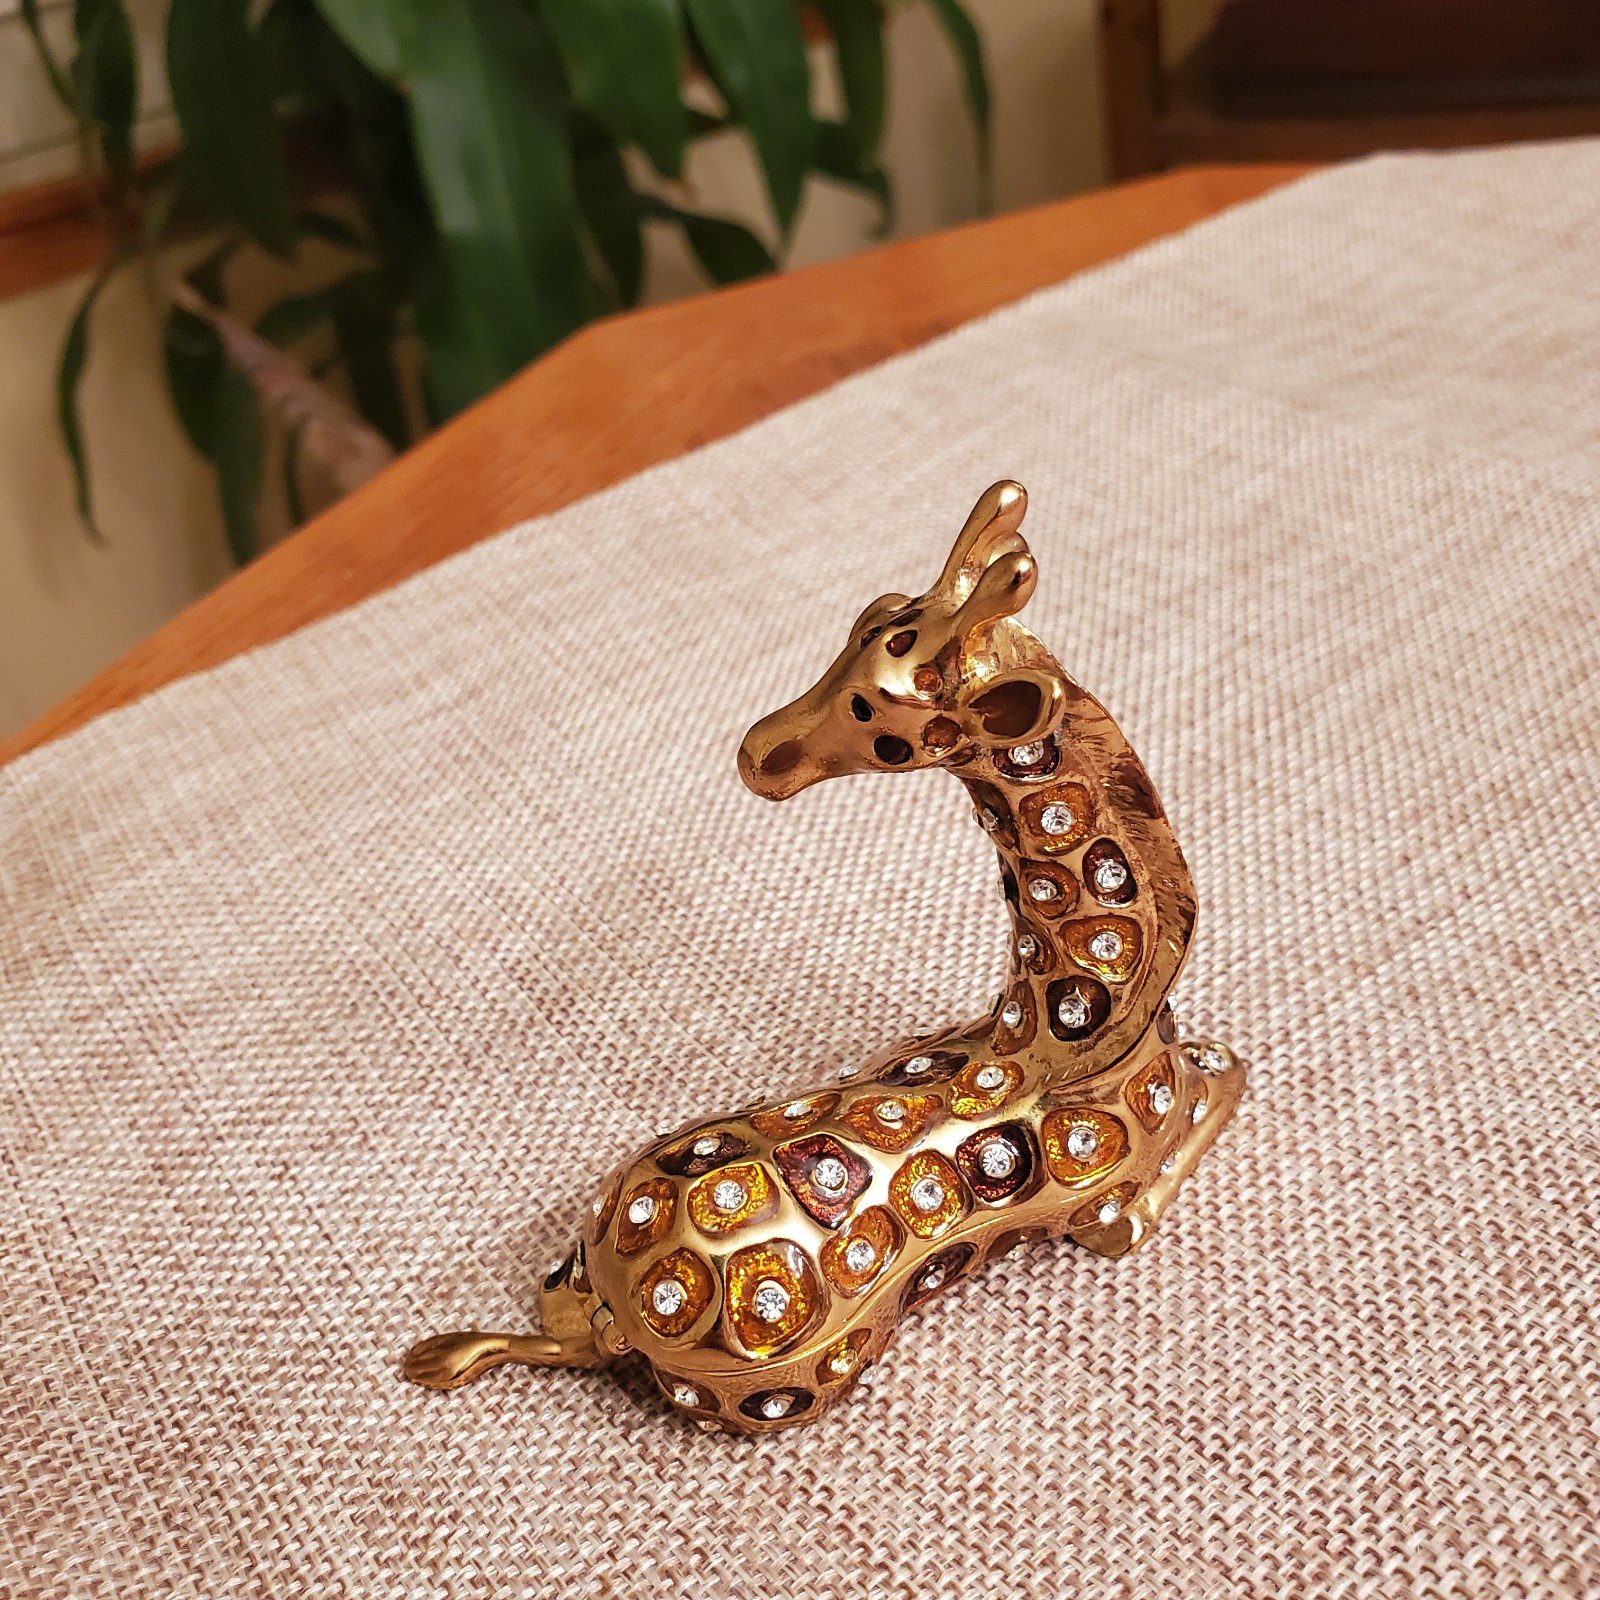 Bejeweled Sitting Giraffe Trinket Box. Hand Set Swarovski Crystals & Enamel BOvMEx9ER